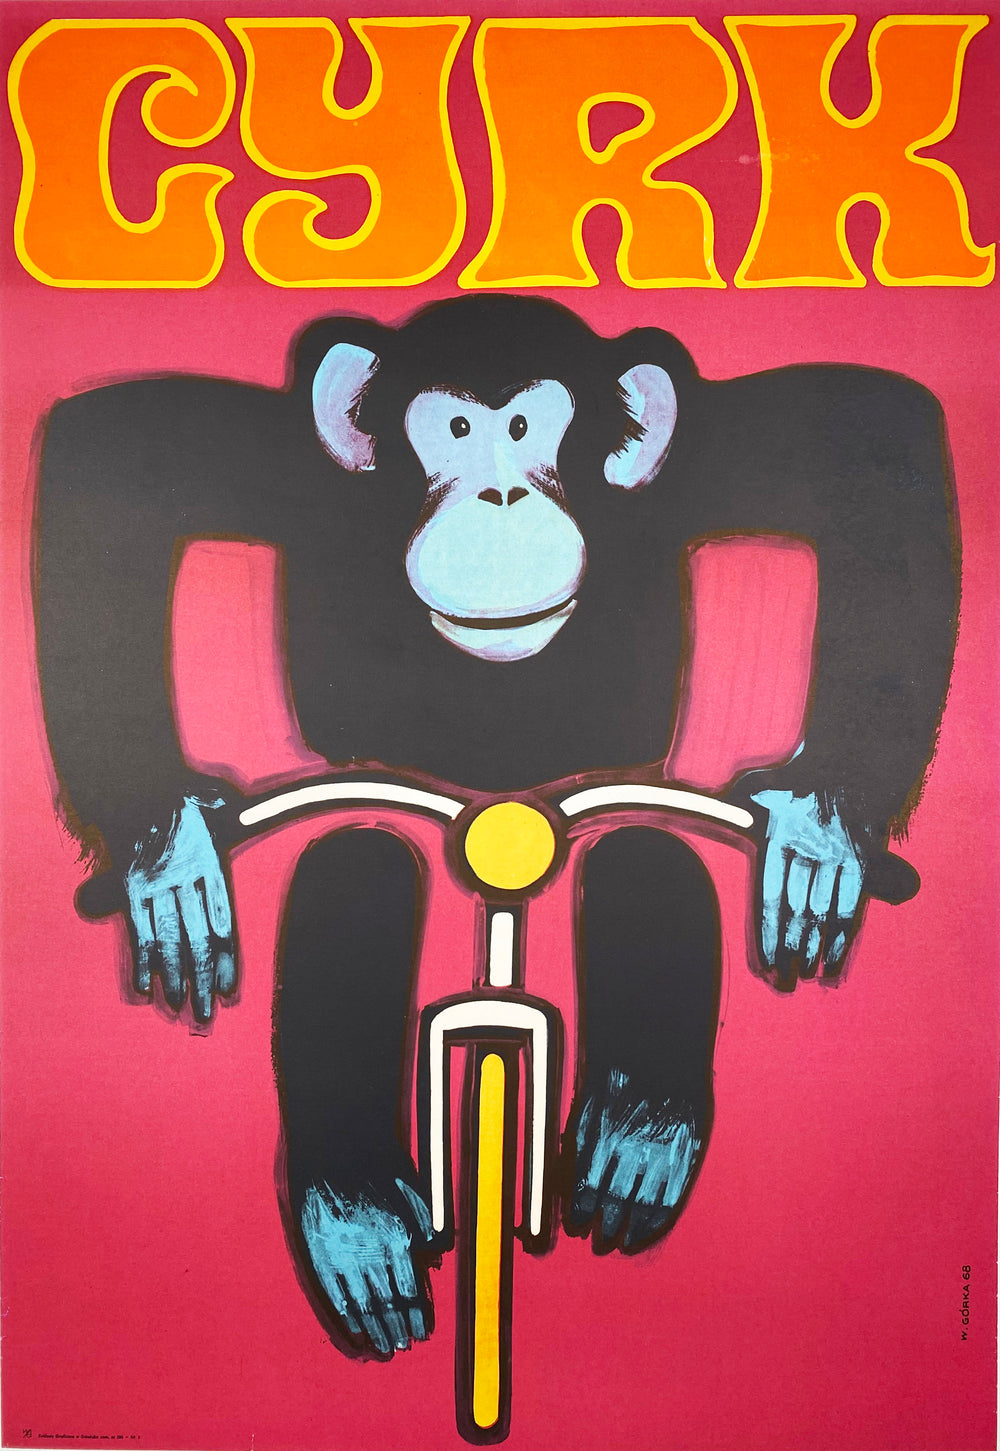 CYRK - Vintage Polish Poster by Gorka 1968